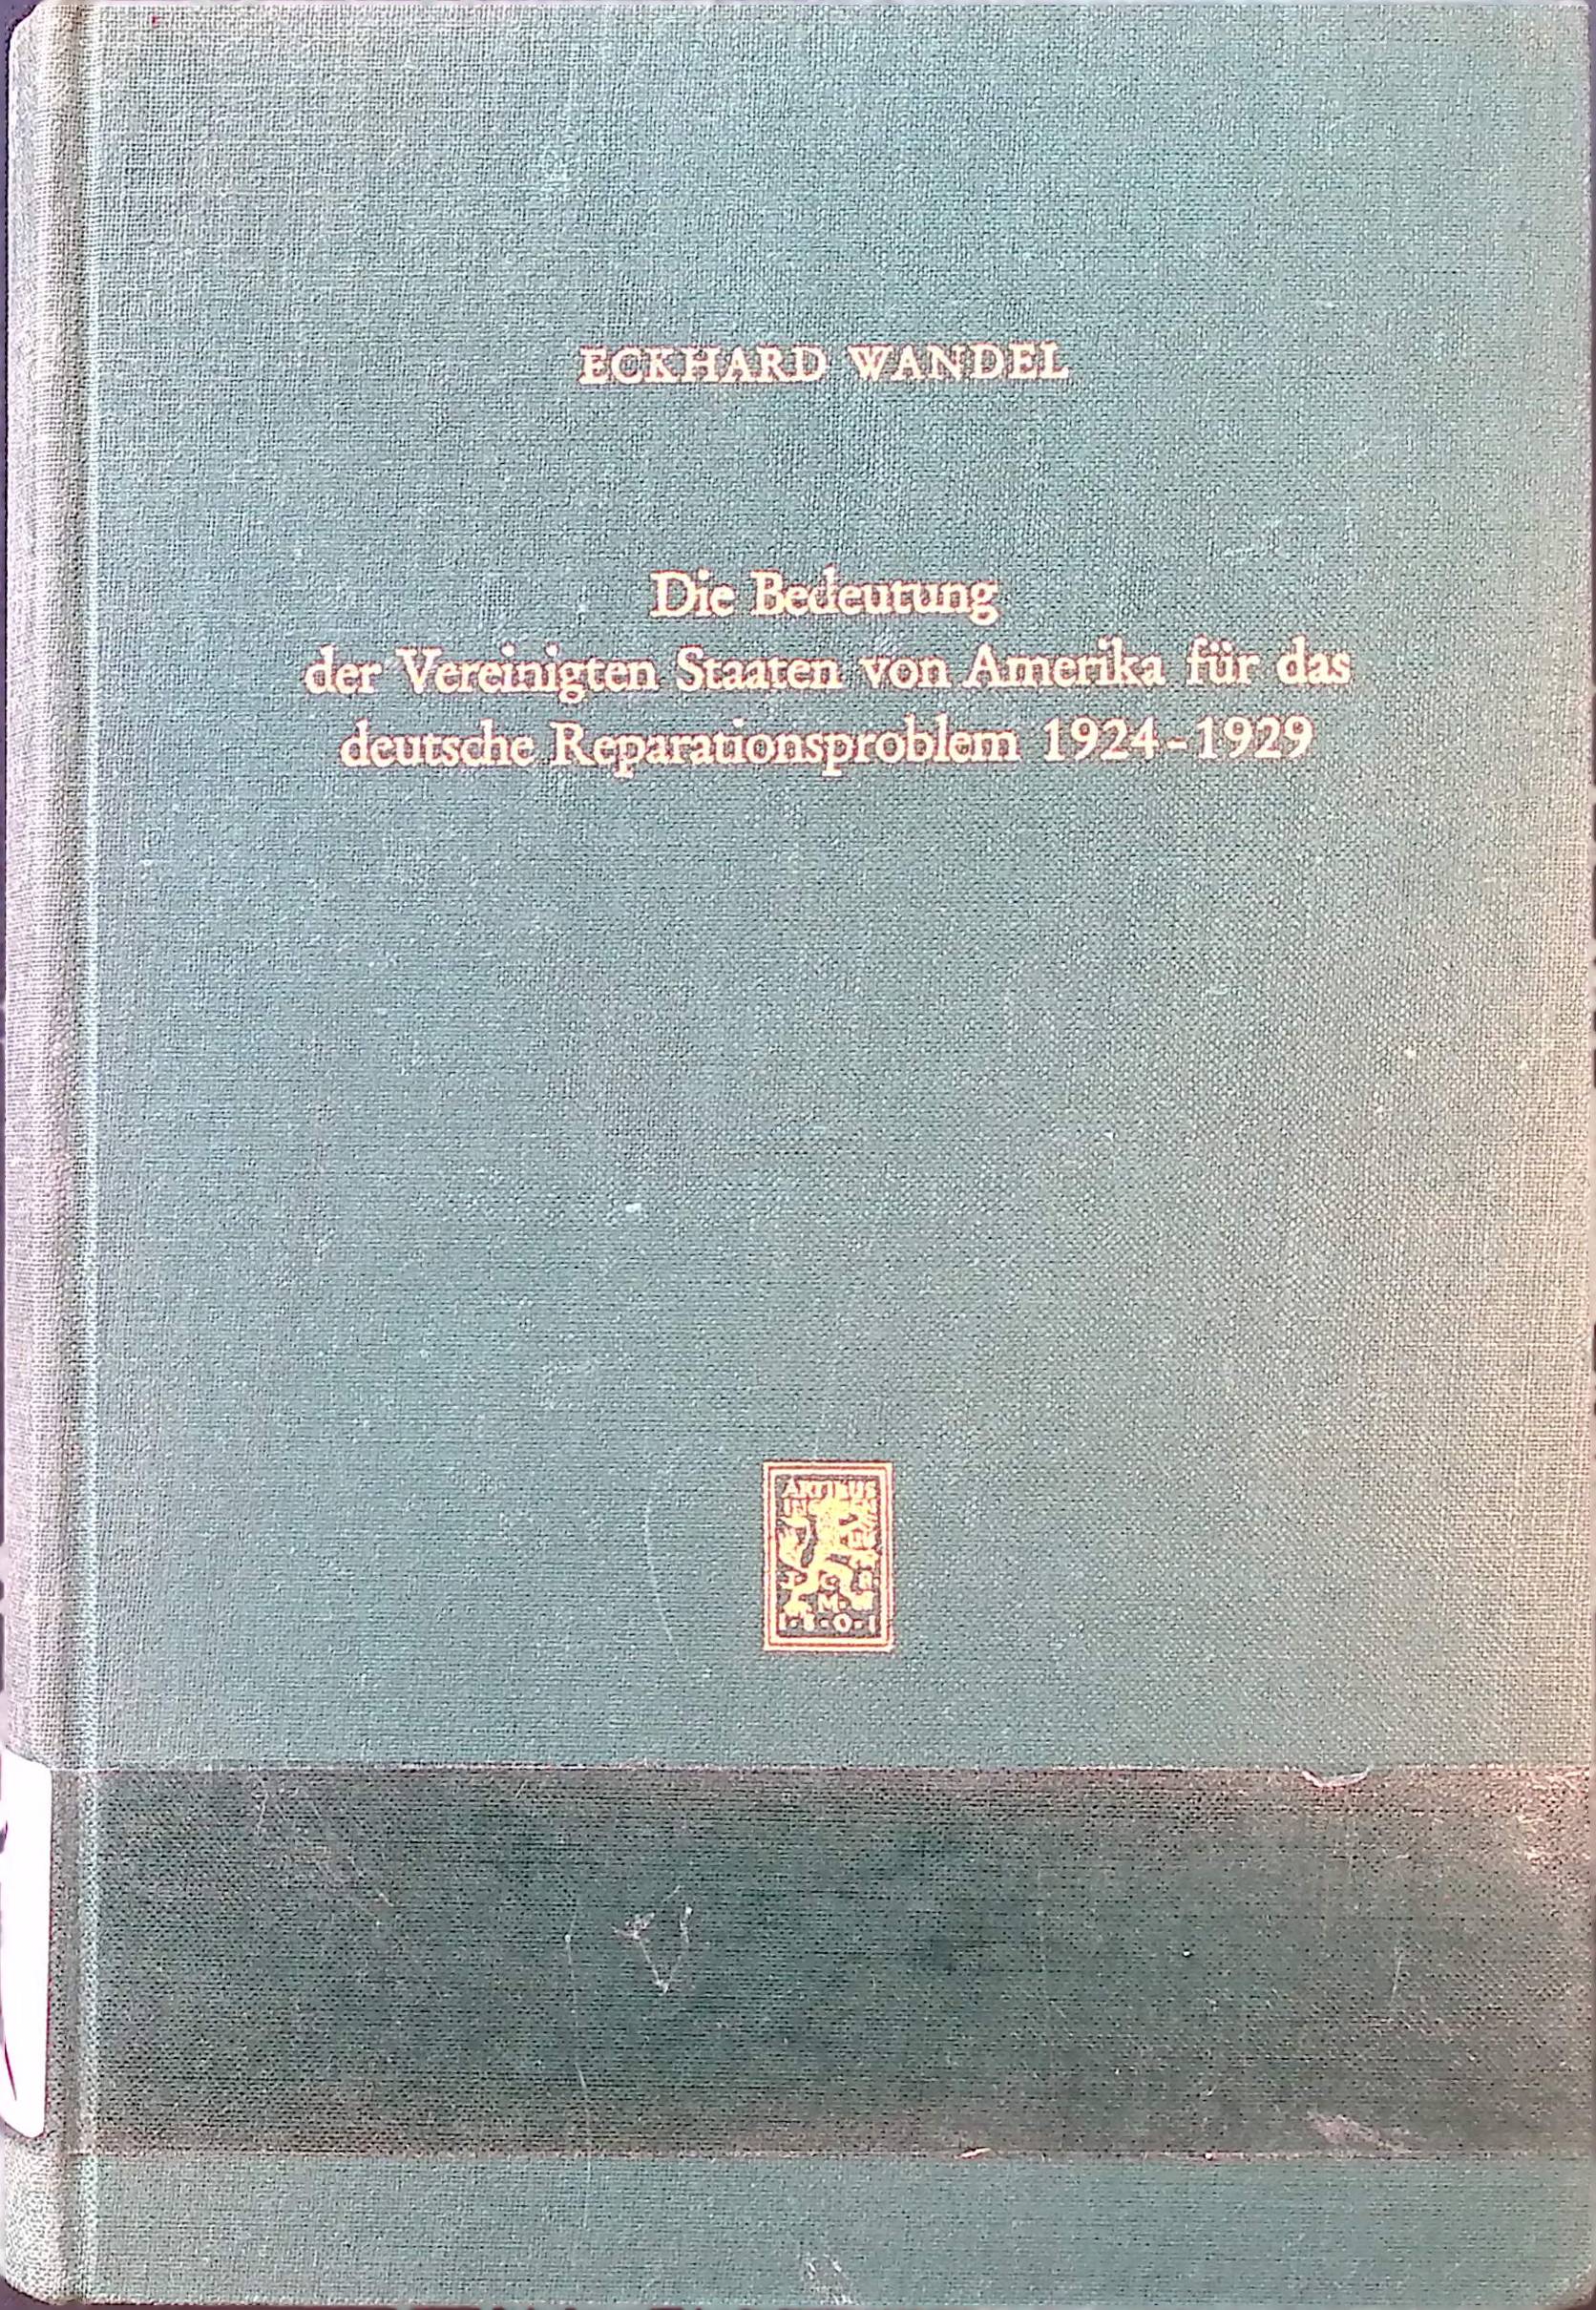 Die Bedeutung der Vereinigten Staaten von Amerika für das deutsche Reparationsproblem 1924 - 1929. Tübinger wirtschaftswissenschaftliche Abhandlungen ; Bd. 11 - Wandel, Eckhard